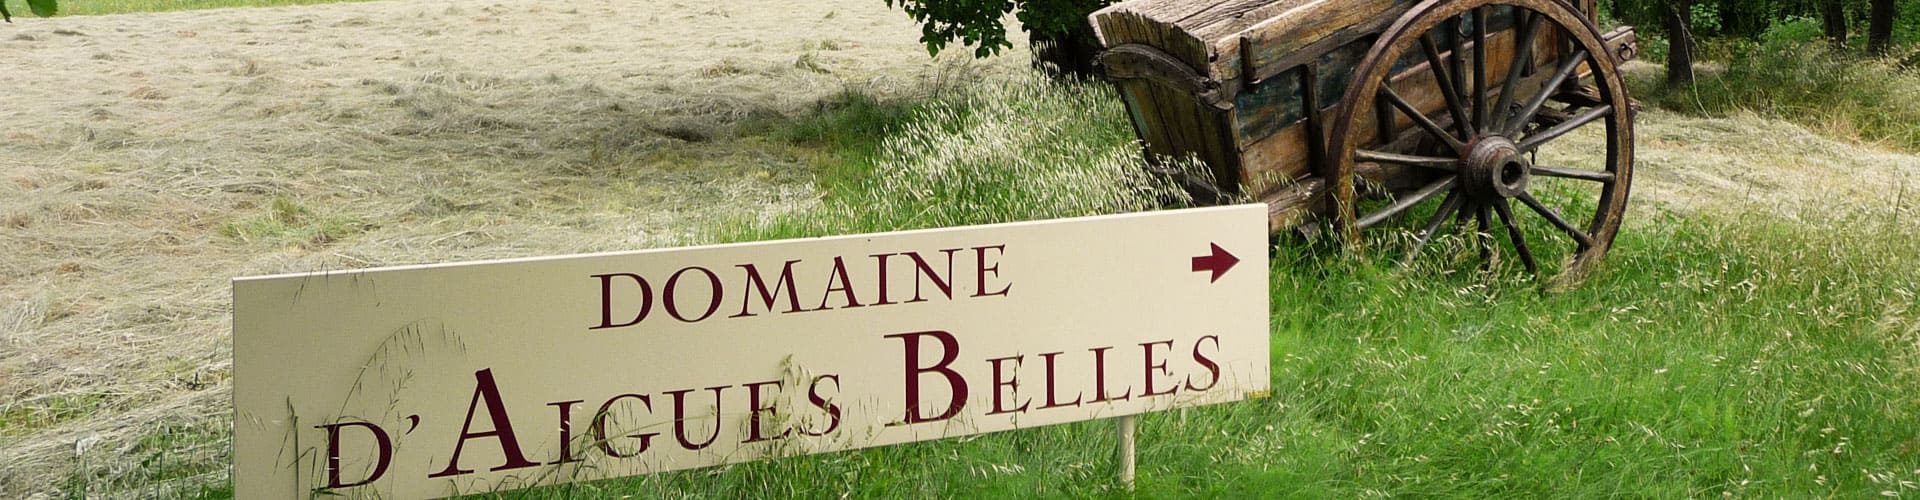 Domaine d'Aigues Belles - Domaine viticole en Languedoc-Roussillon